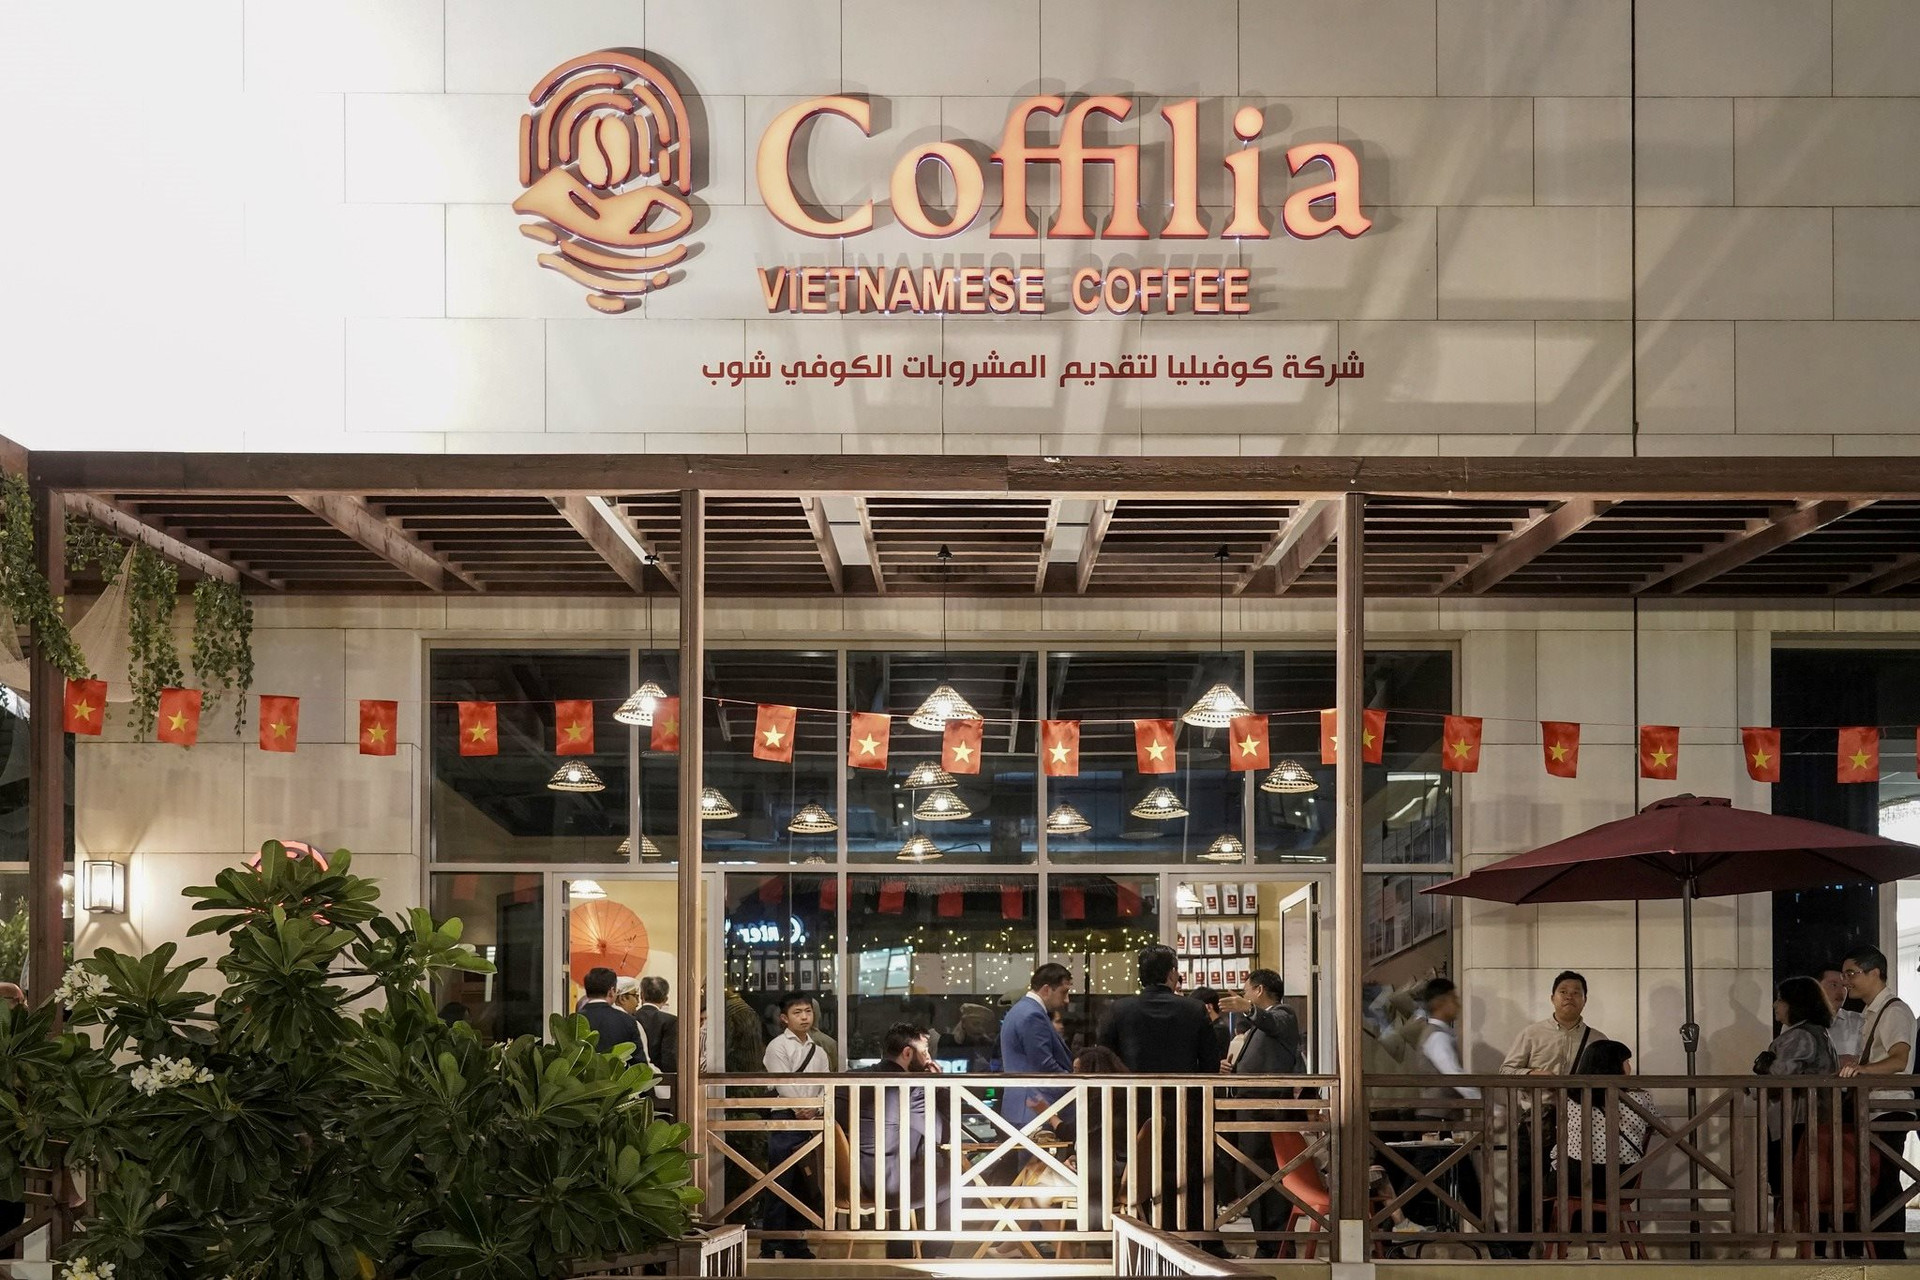 Thêm một thương hiệu cà phê Việt ra nước ngoài, mở cửa hàng đầu tiên tại vùng Vịnh - Ảnh 1.